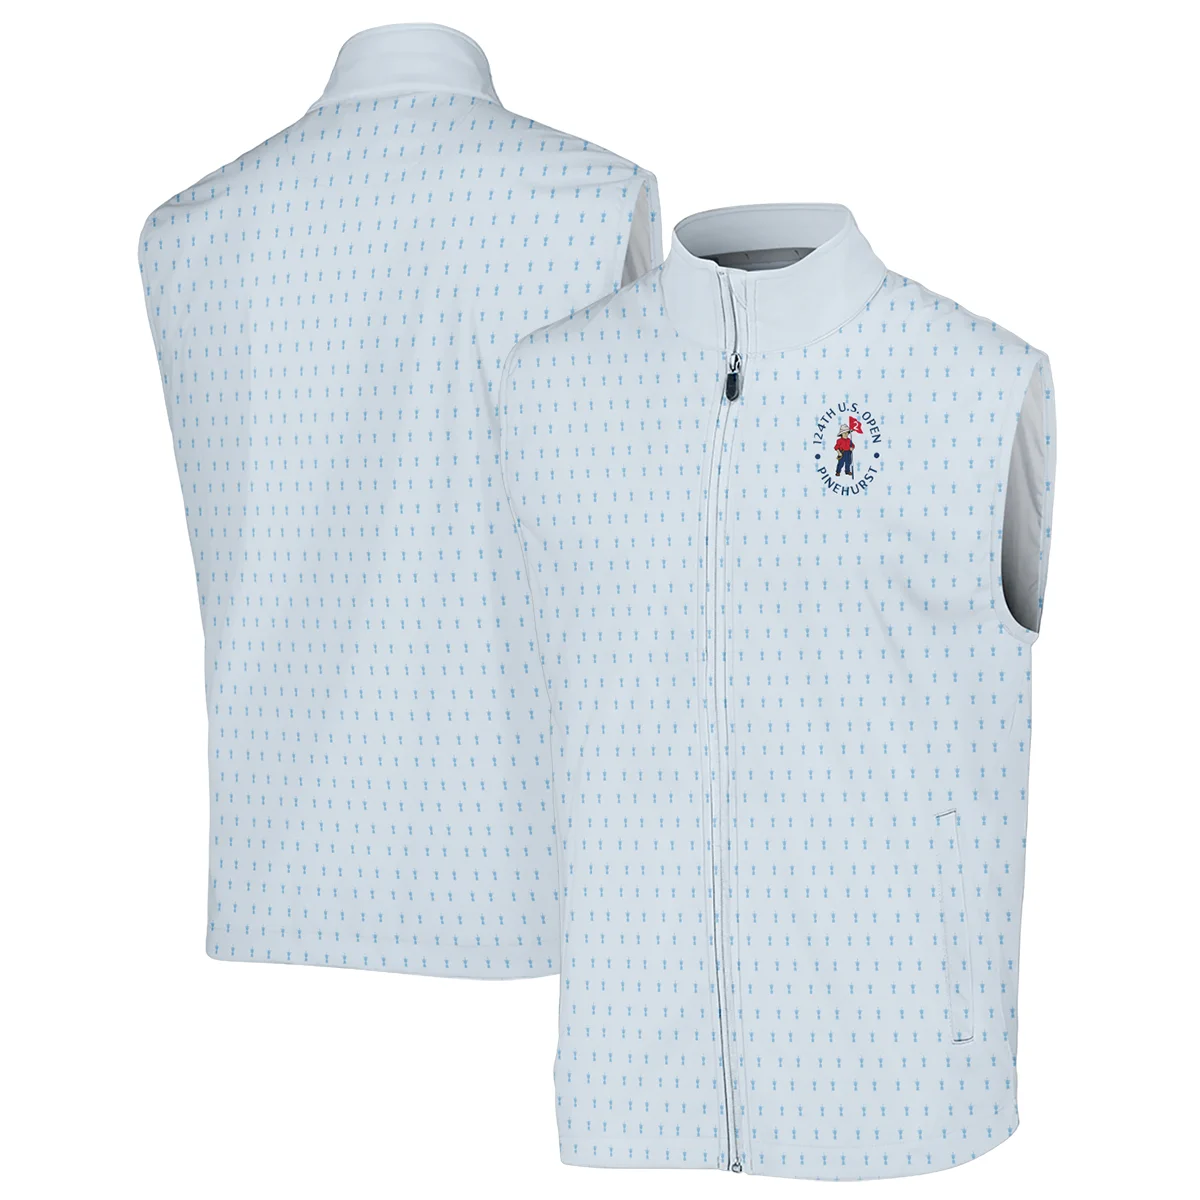 Golf Pattern Cup Light Blue Green 124th U.S. Open Pinehurst Zipper Polo Shirt Style Classic Zipper Polo Shirt For Men